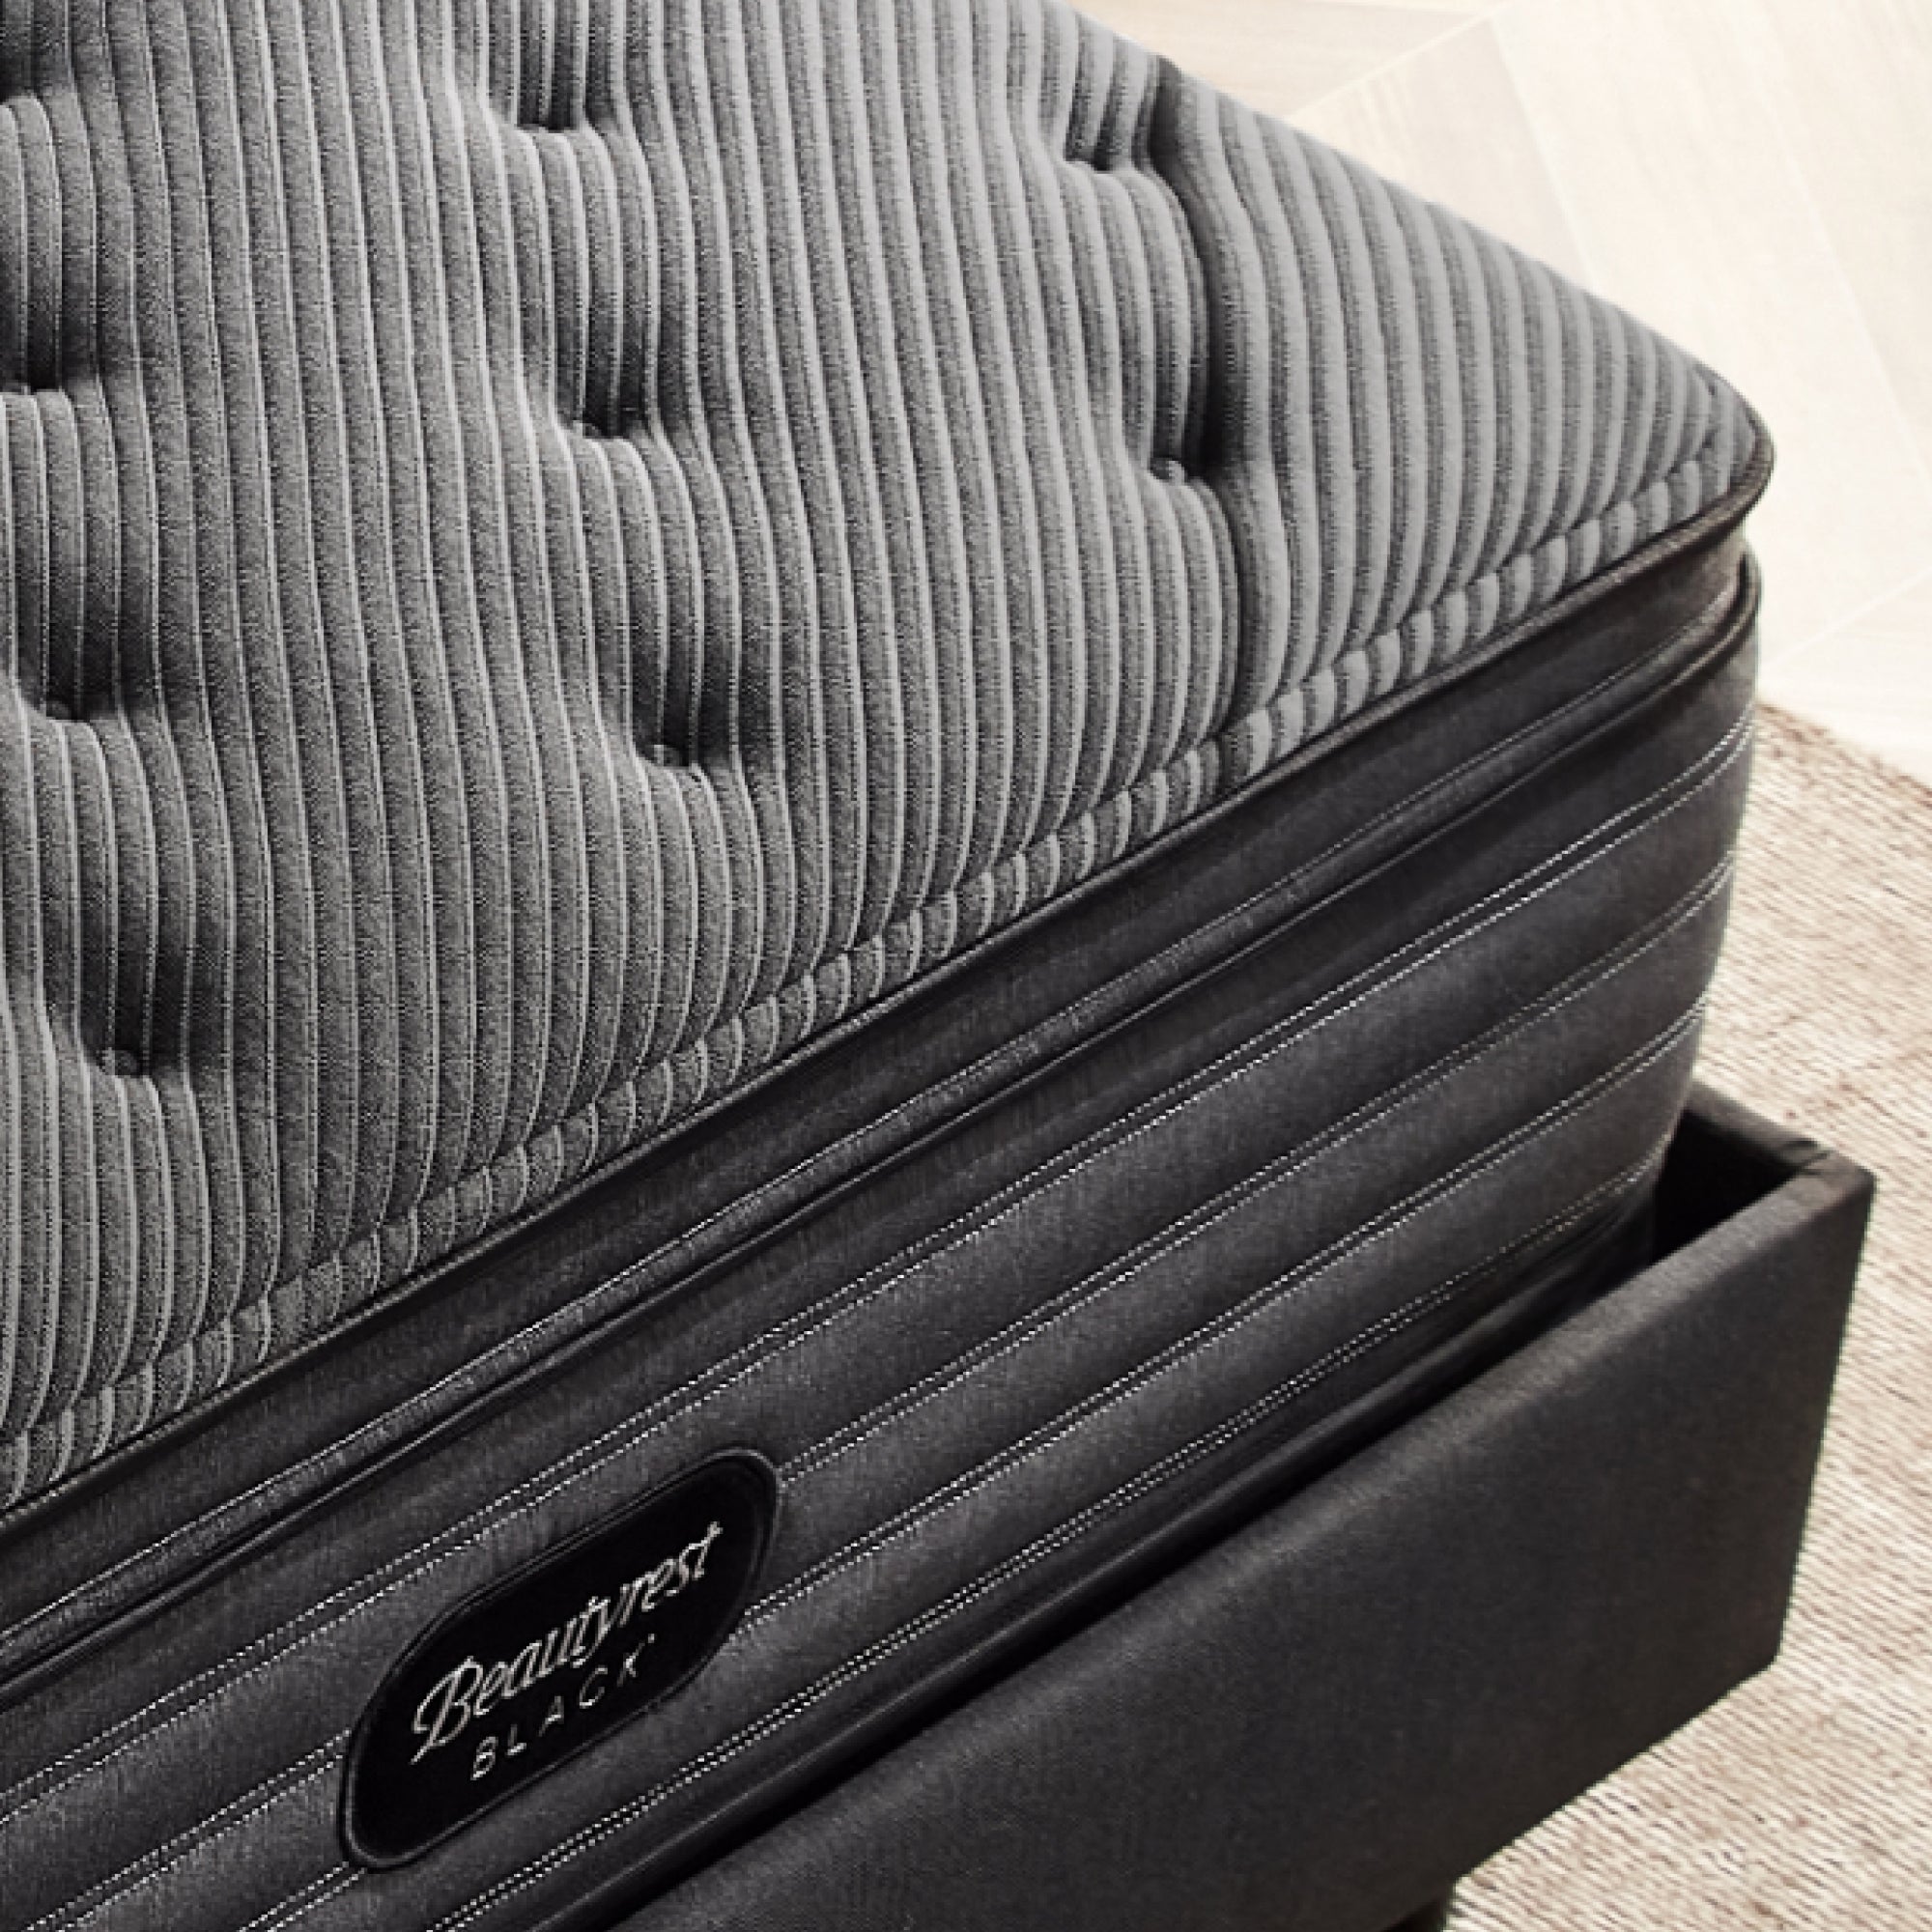 Corner view of the Beautyrest black l-class mattress||series: enhanced l-class || feel: medium pillow top